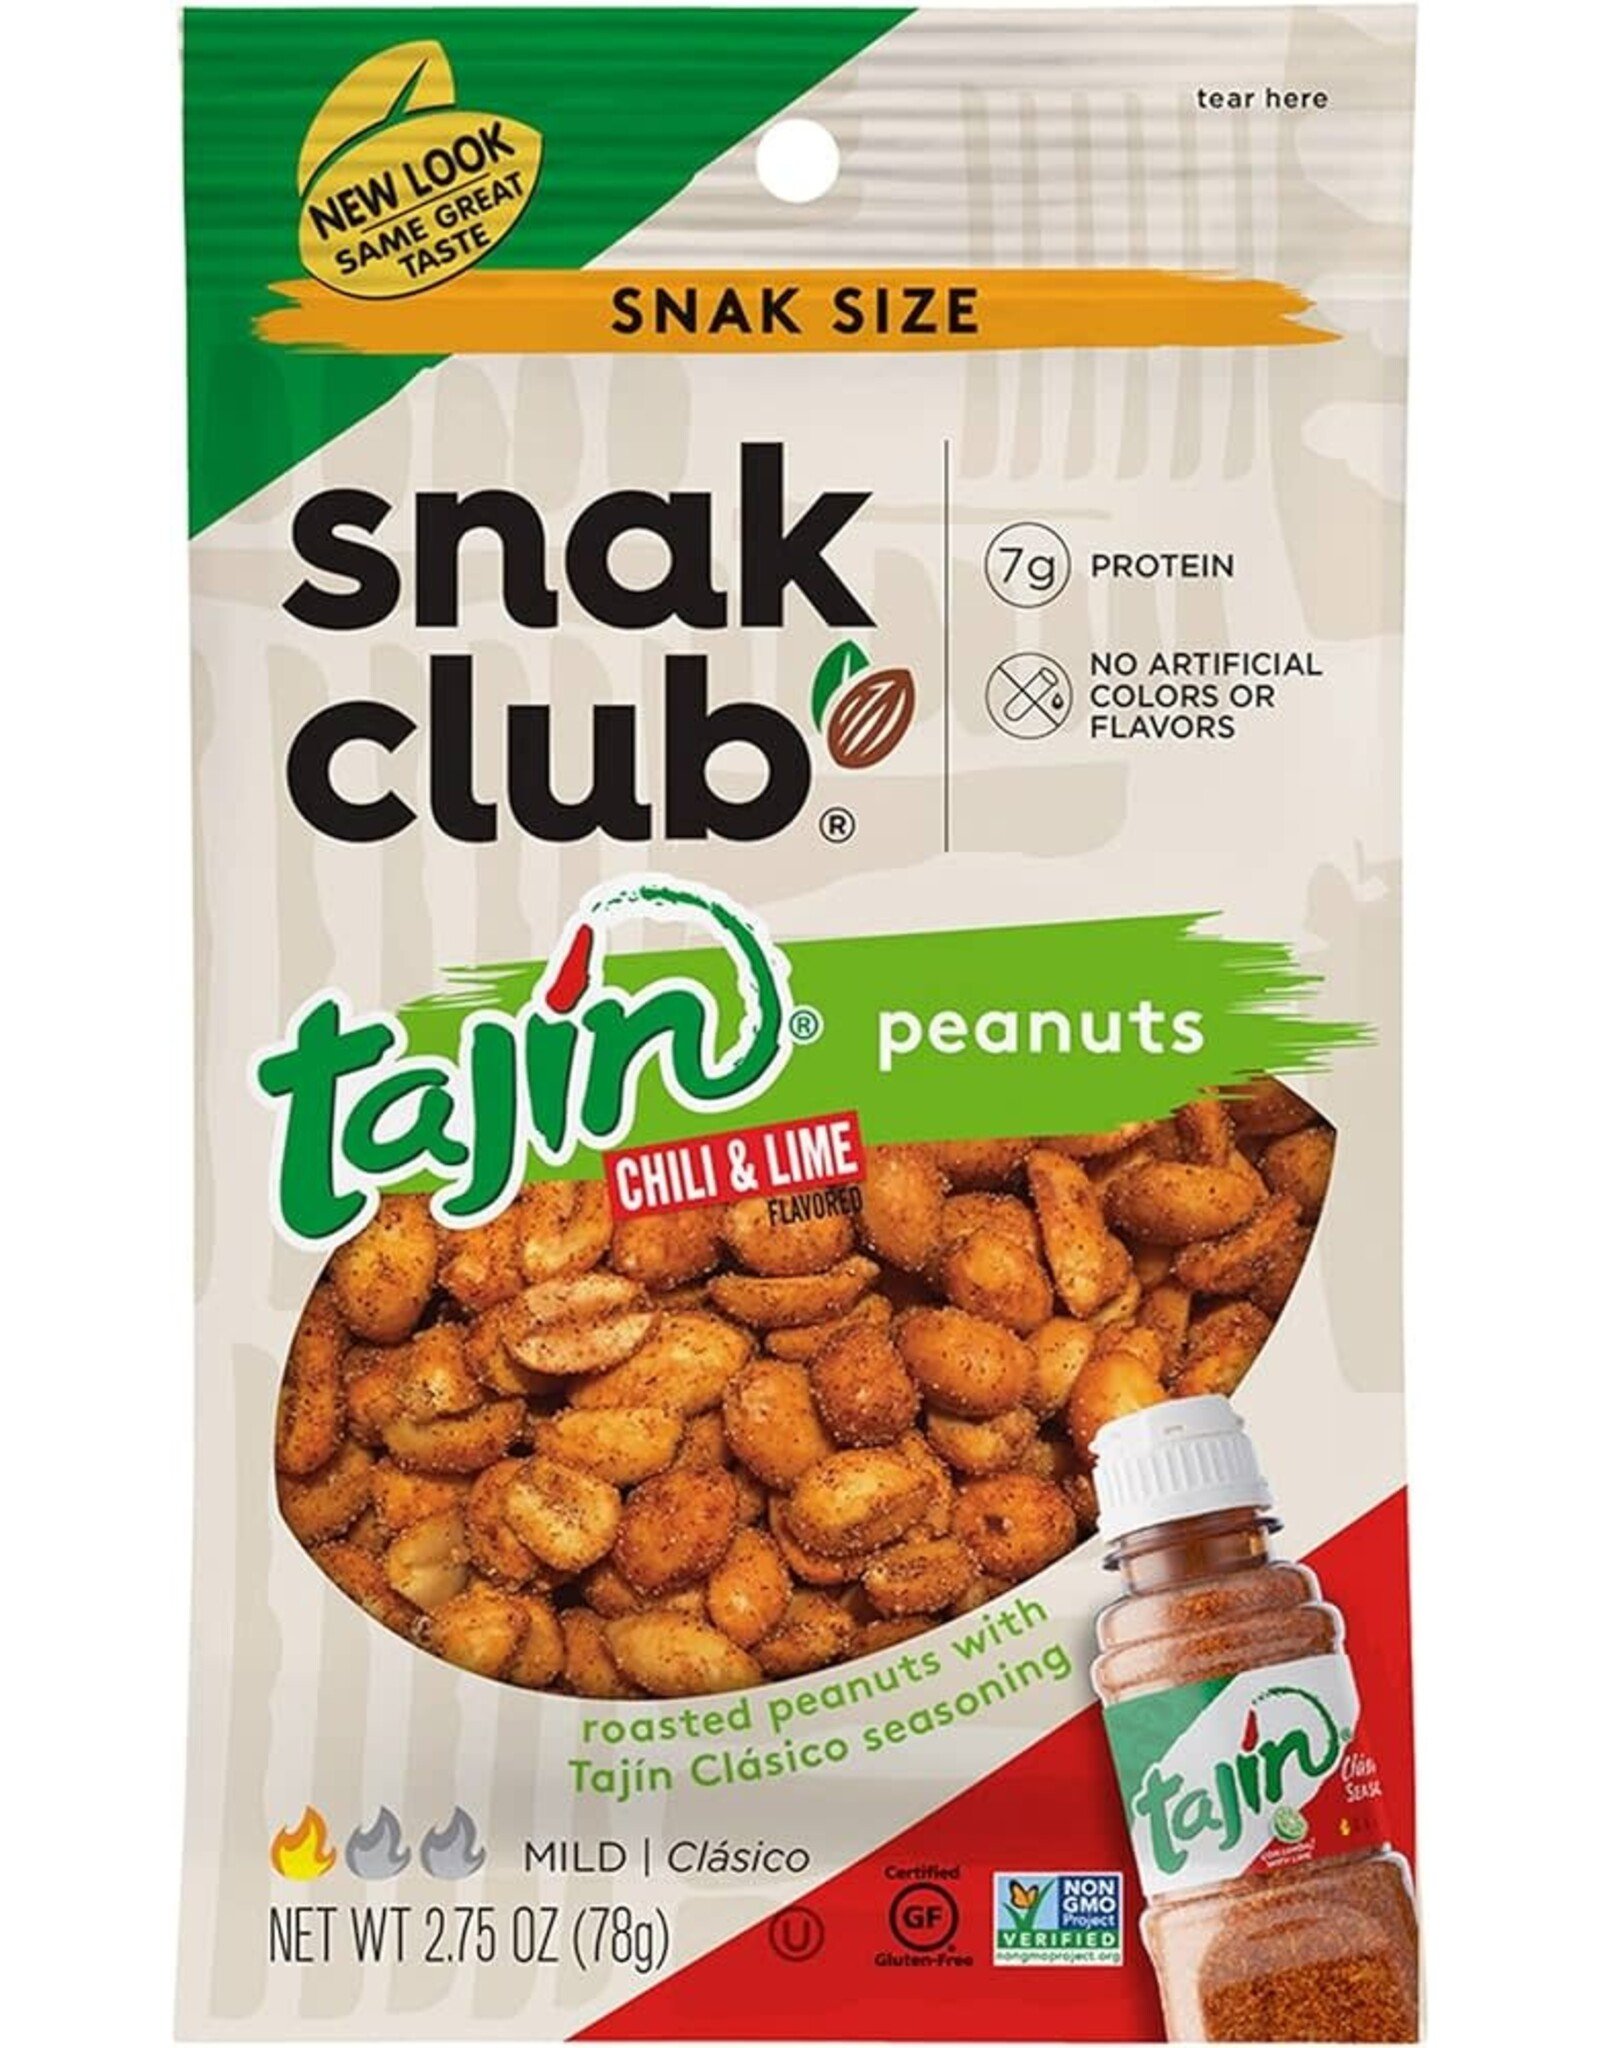 Snak Club Tajin Chili & Lime Peanuts